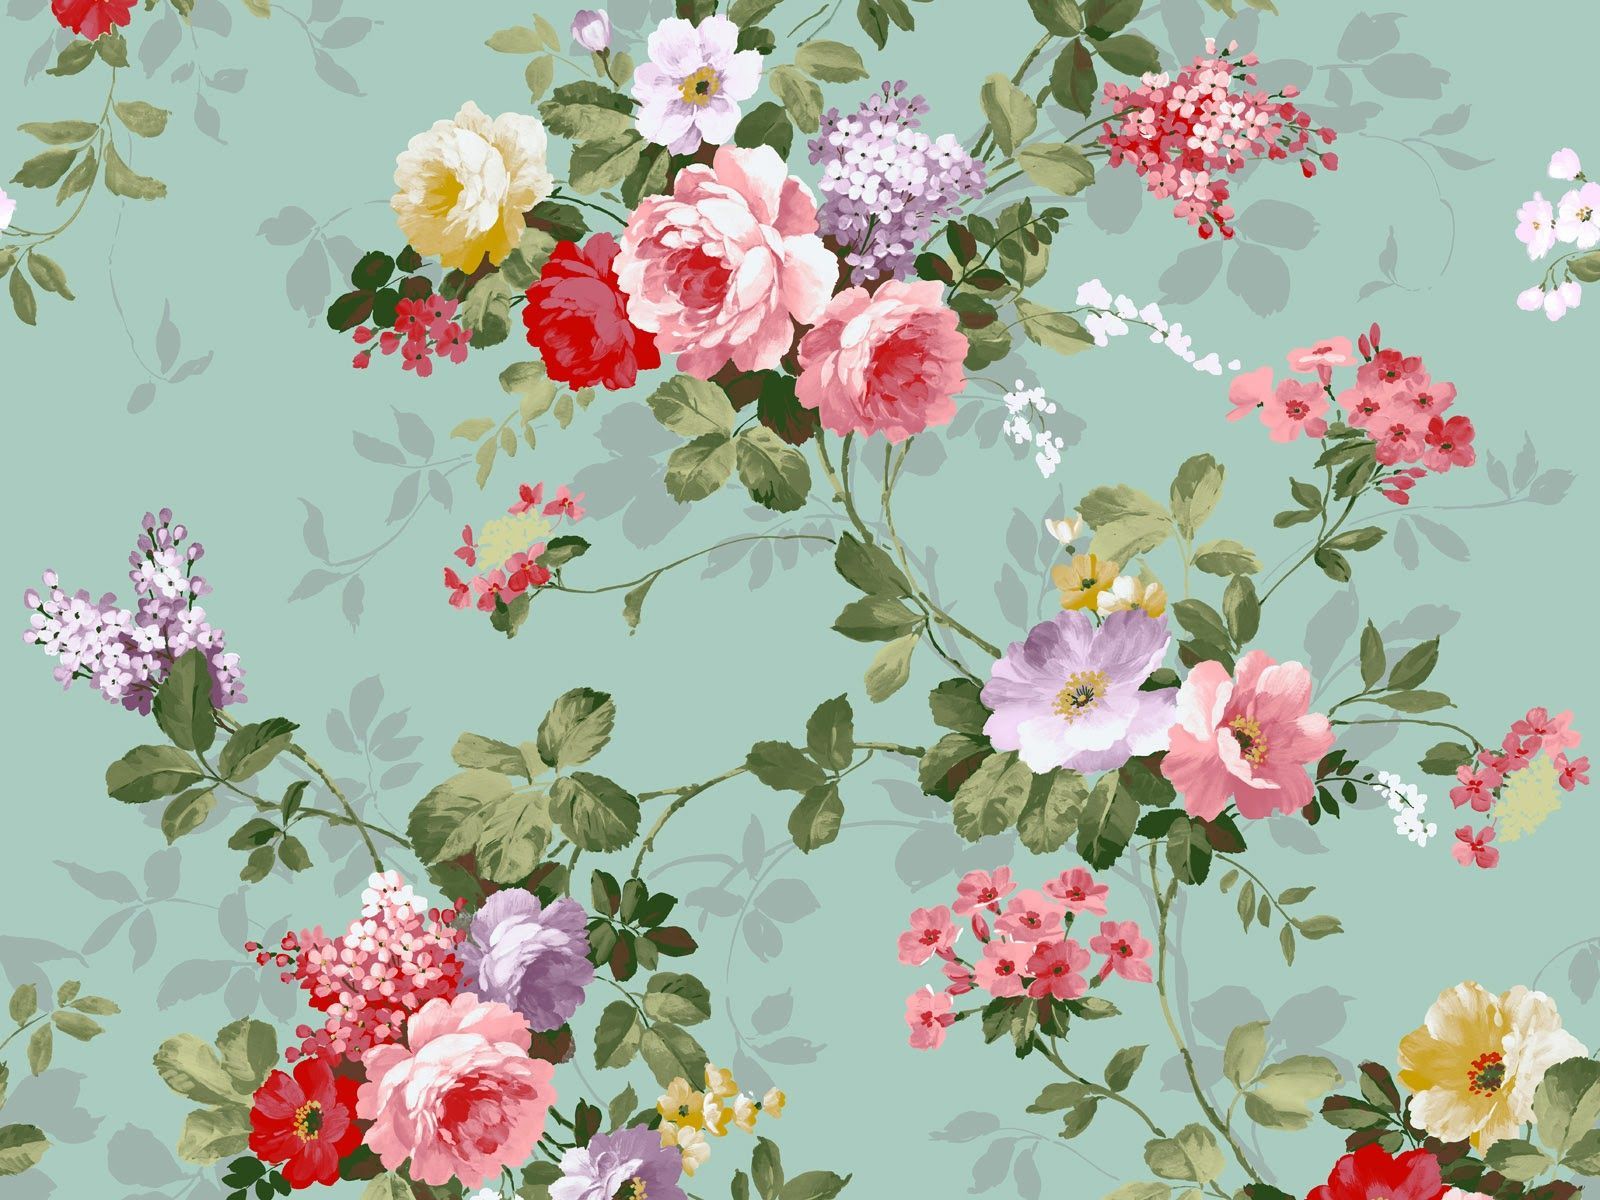 Download 15 Free Floral Vintage Backgrounds